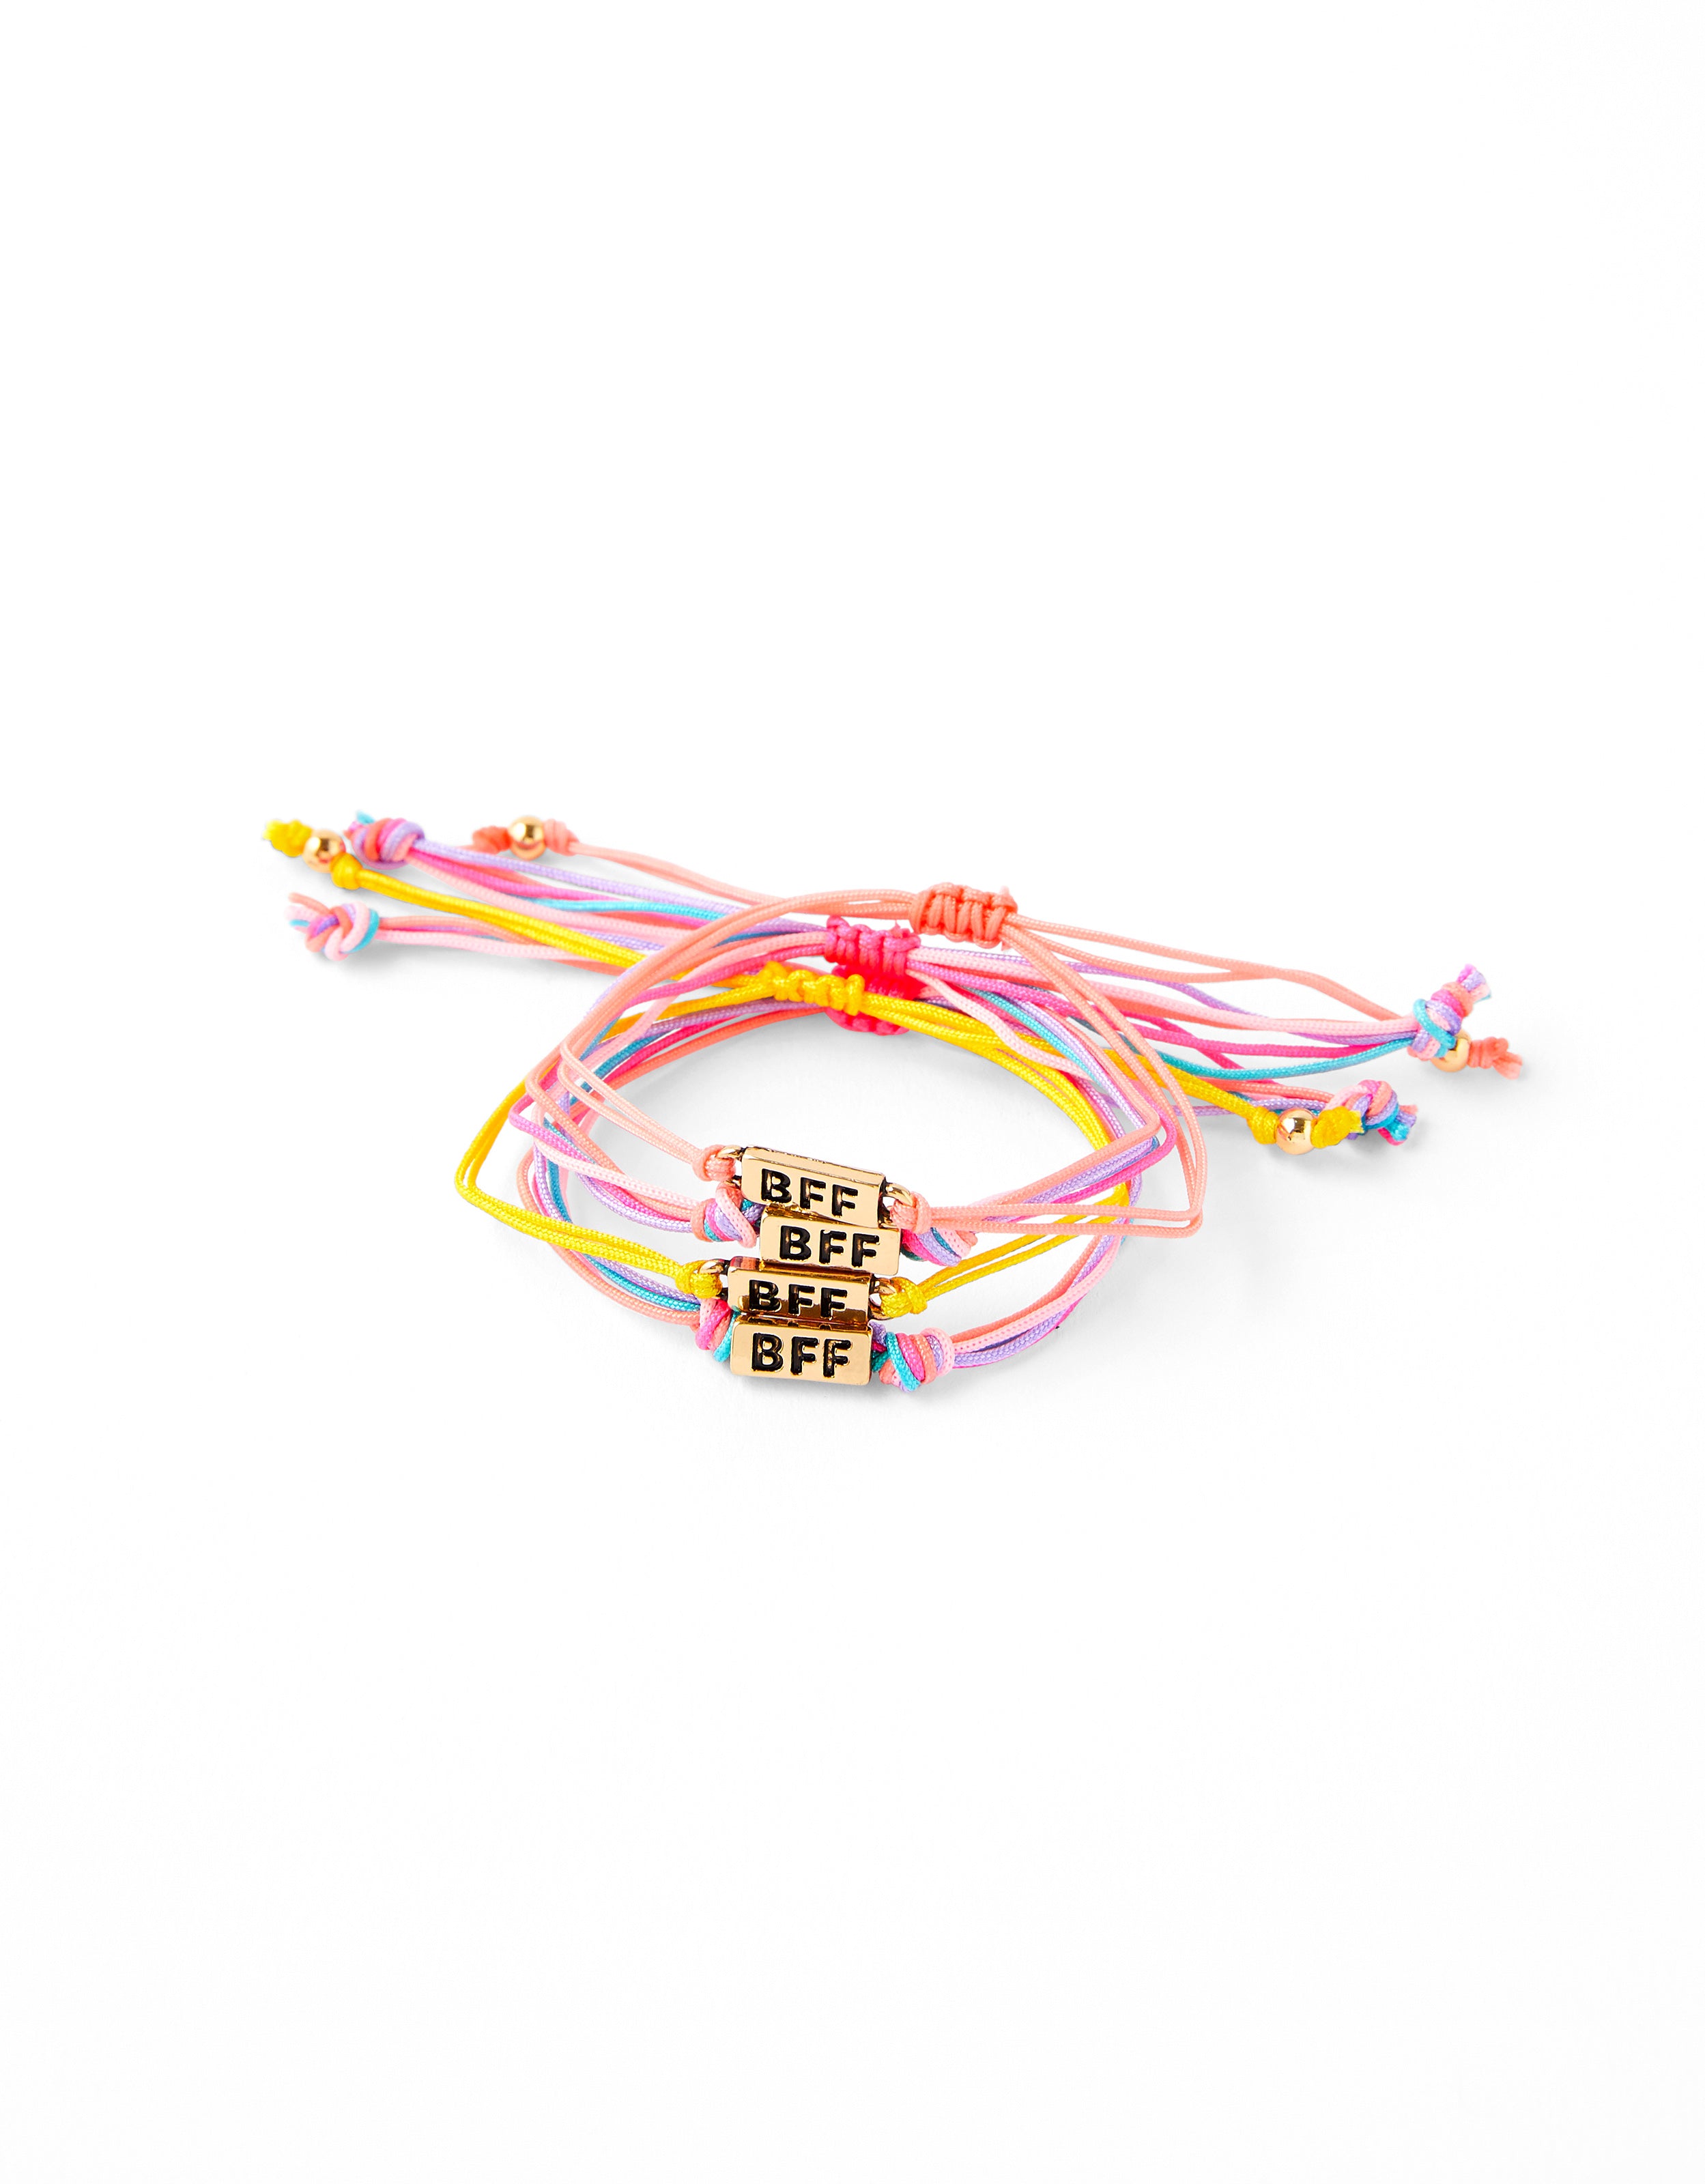 friendship bracelets for best friends ❤️ : r/friendshipbracelets